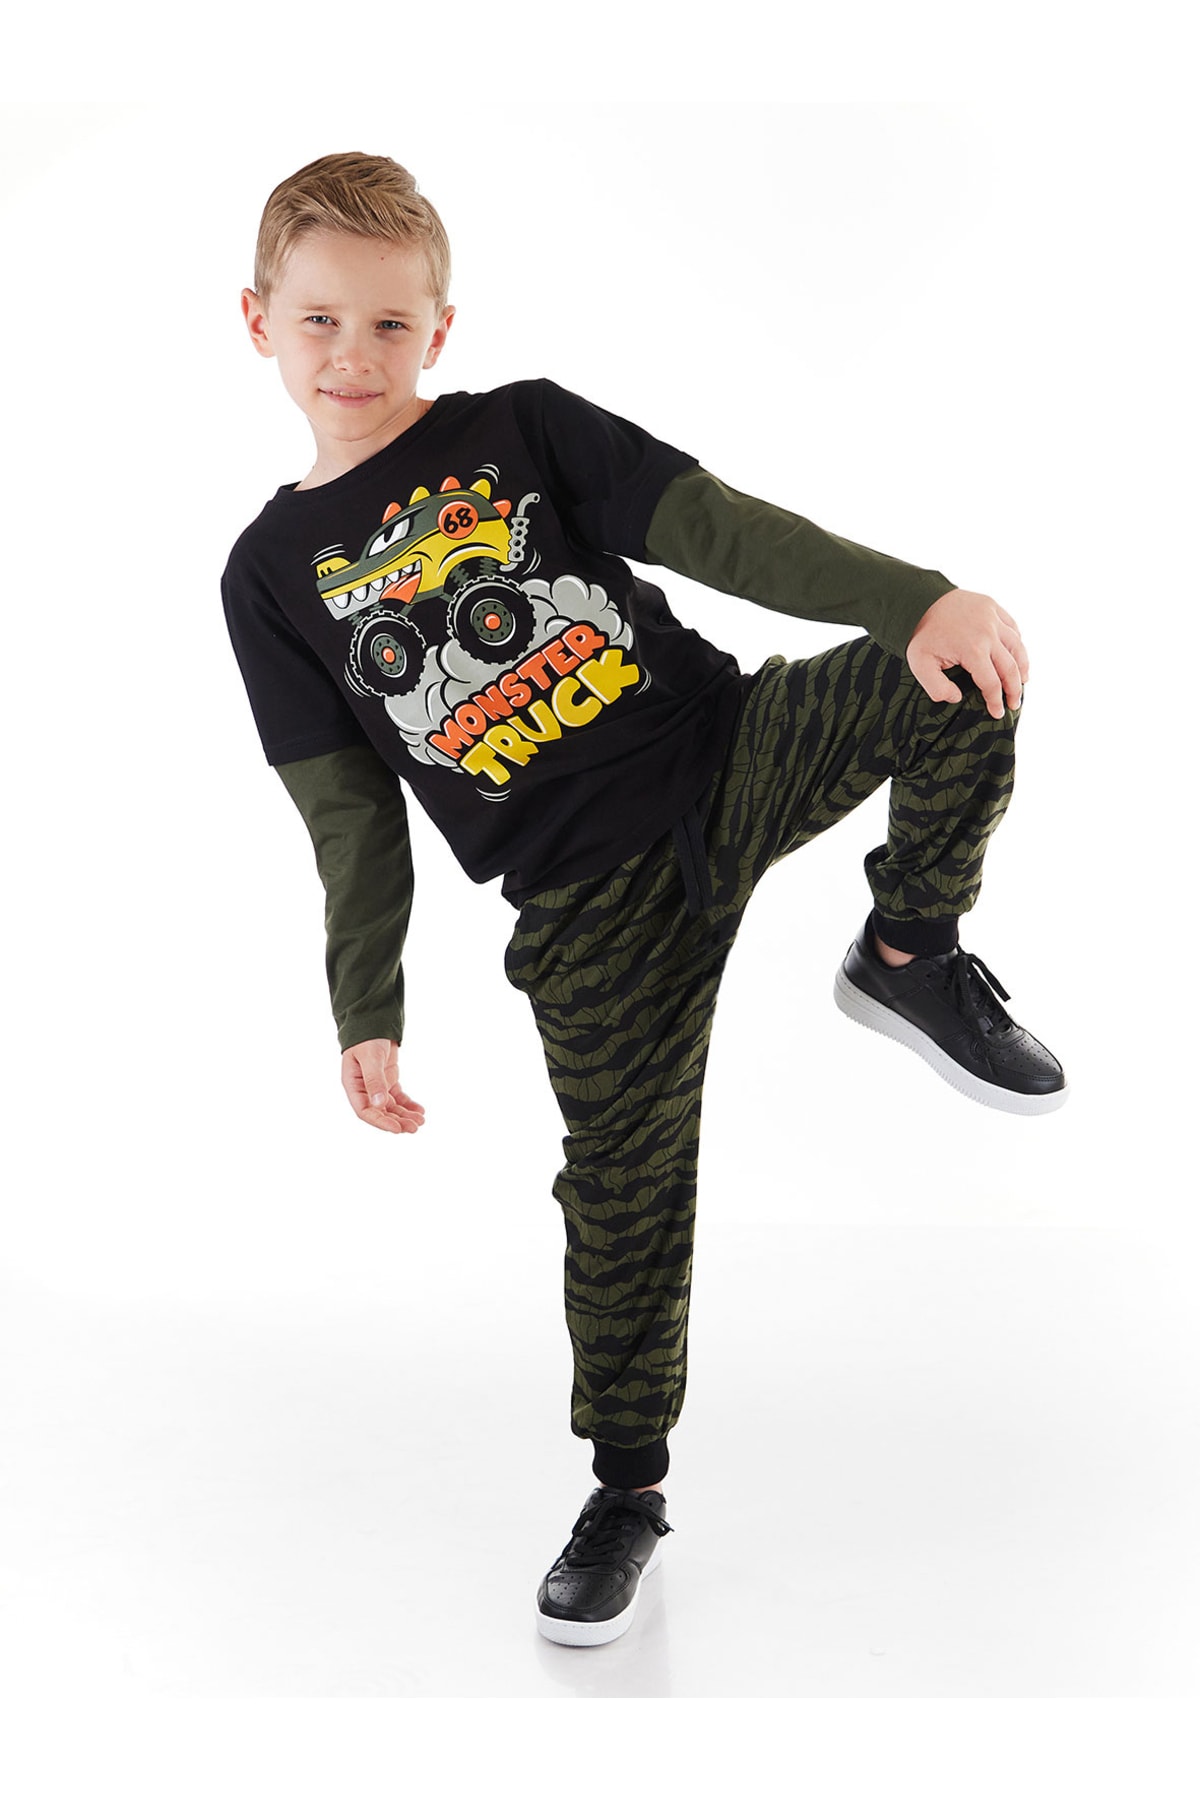 Levně mshb&g Truck Camouflage Boys T-shirt Trousers Suit